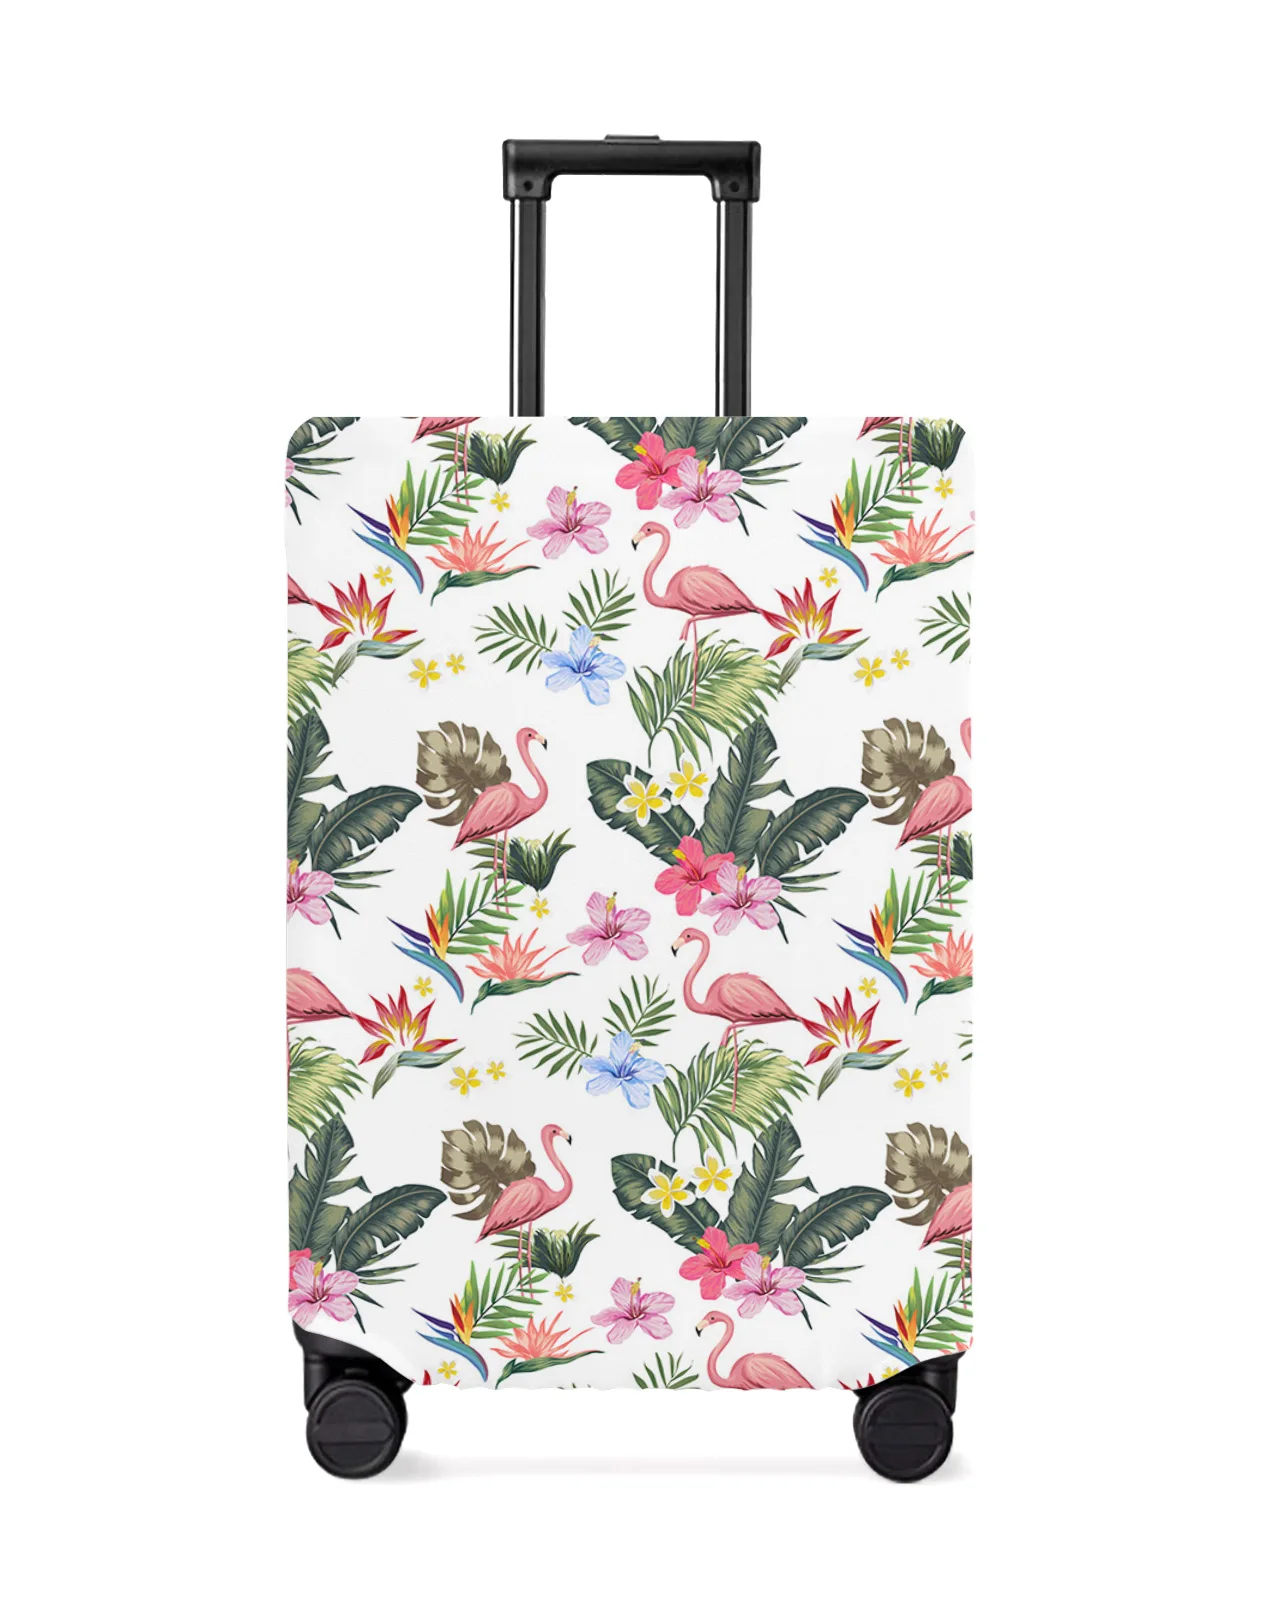 juste-de-bagage-de-voyage-elastique-avec-plantes-tropicales-flamant-rose-housse-de-bagage-etui-anti-poussiere-accessoires-de-valise-18-32-pouces